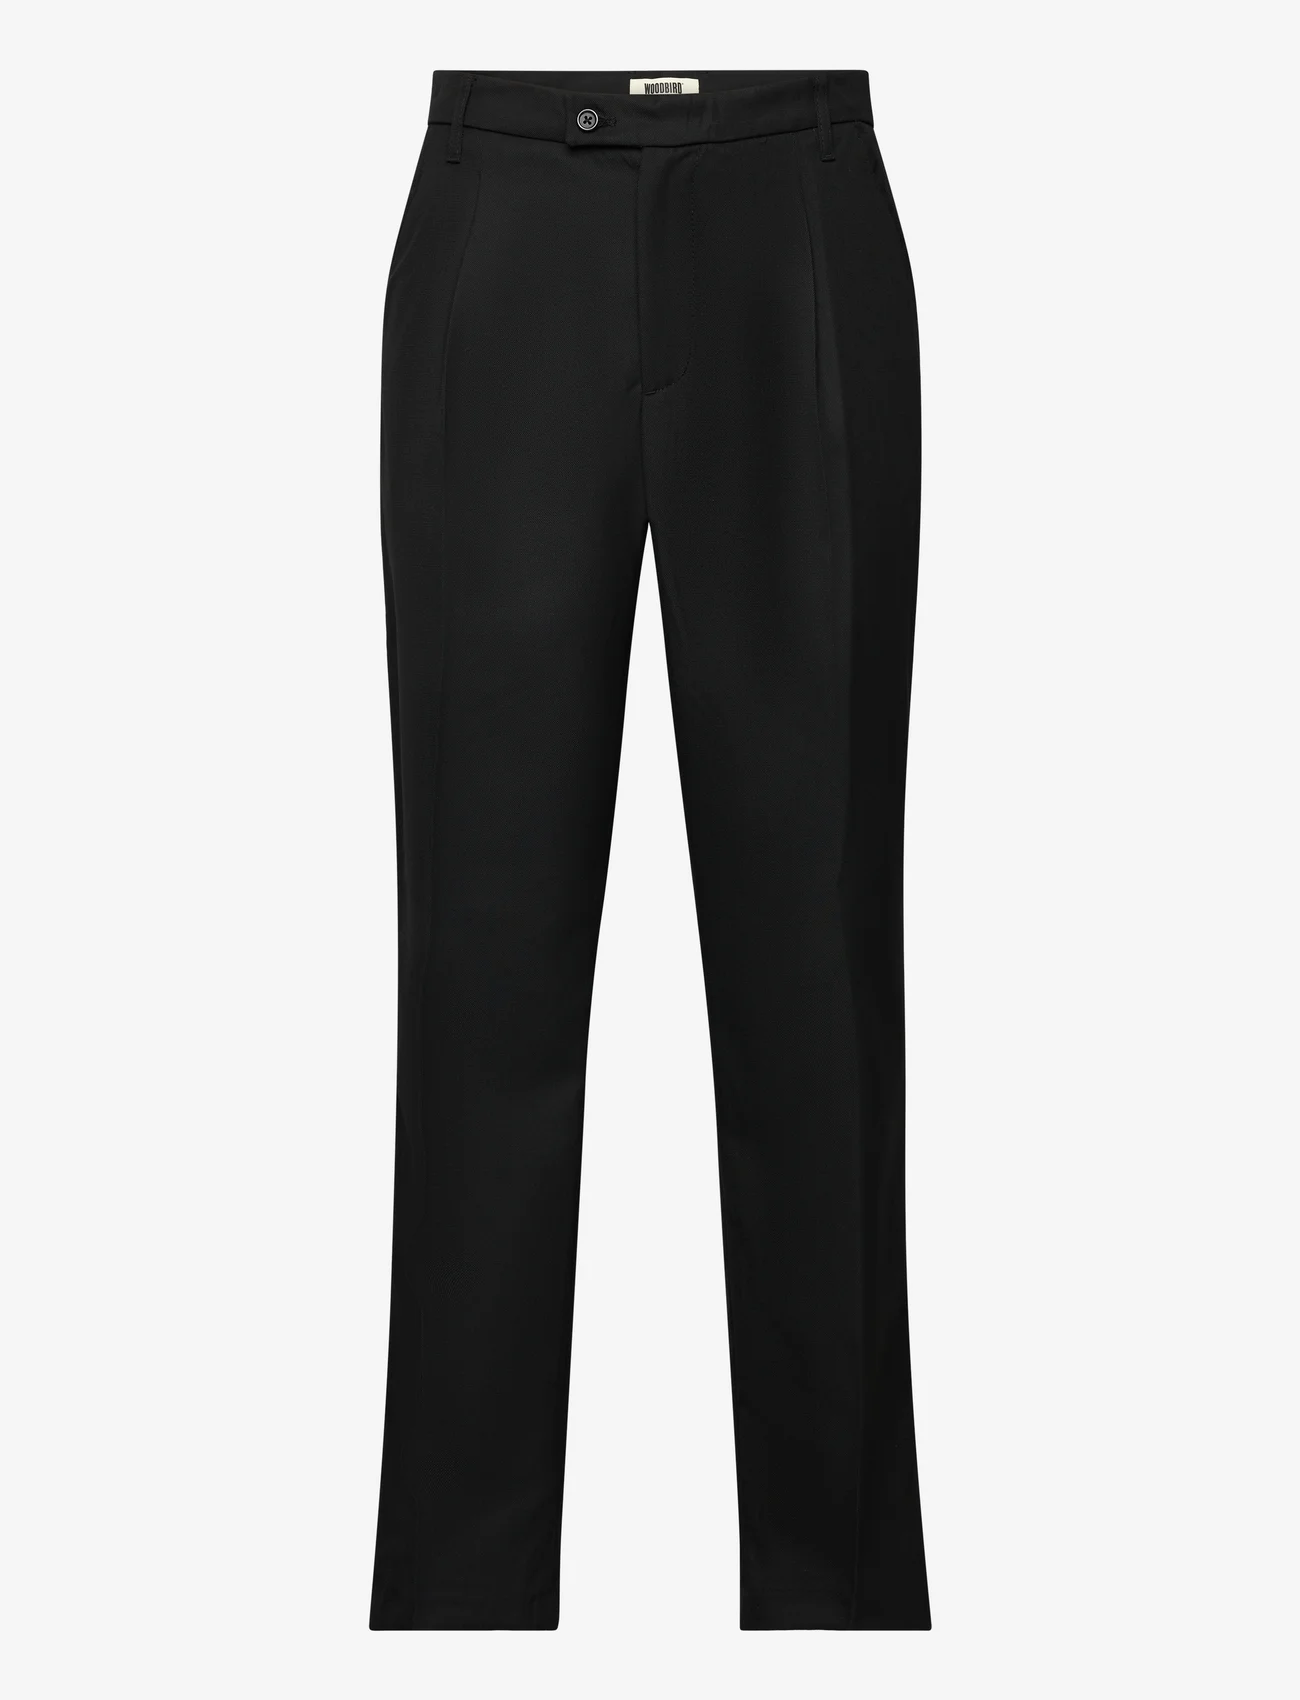 Woodbird - WBBen Suit Pant - suit trousers - black - 0